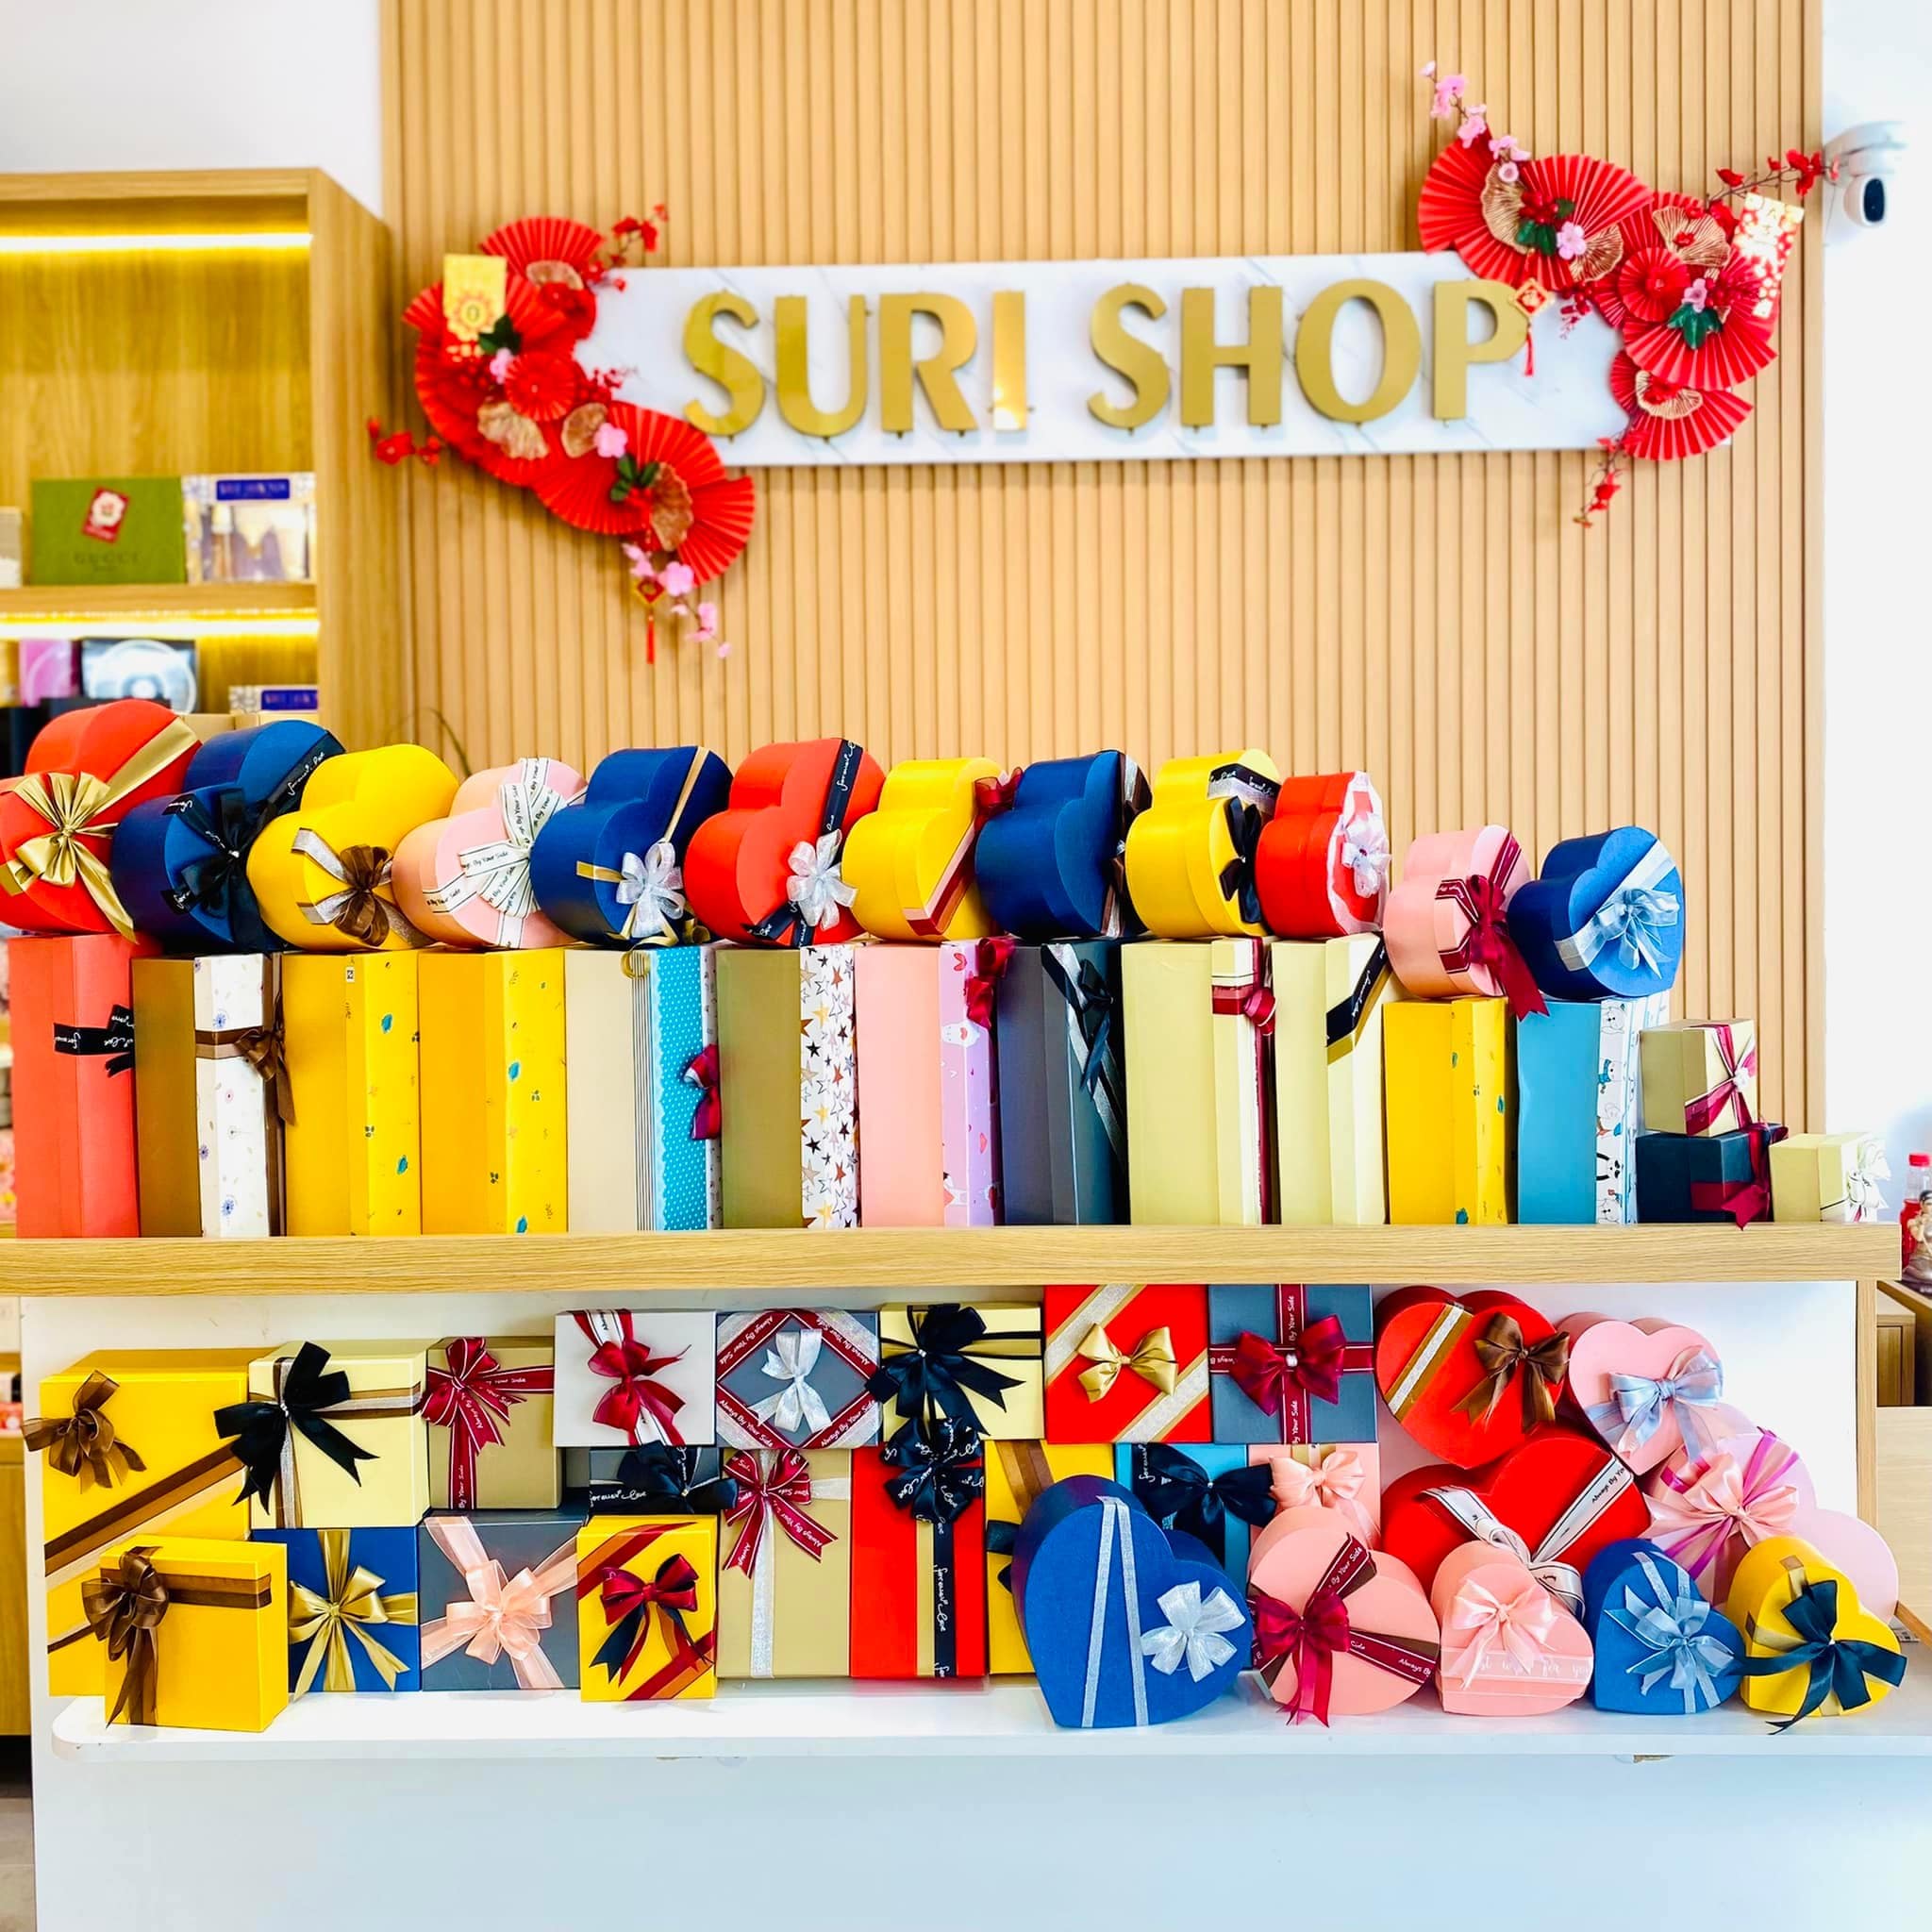 Suri Shop